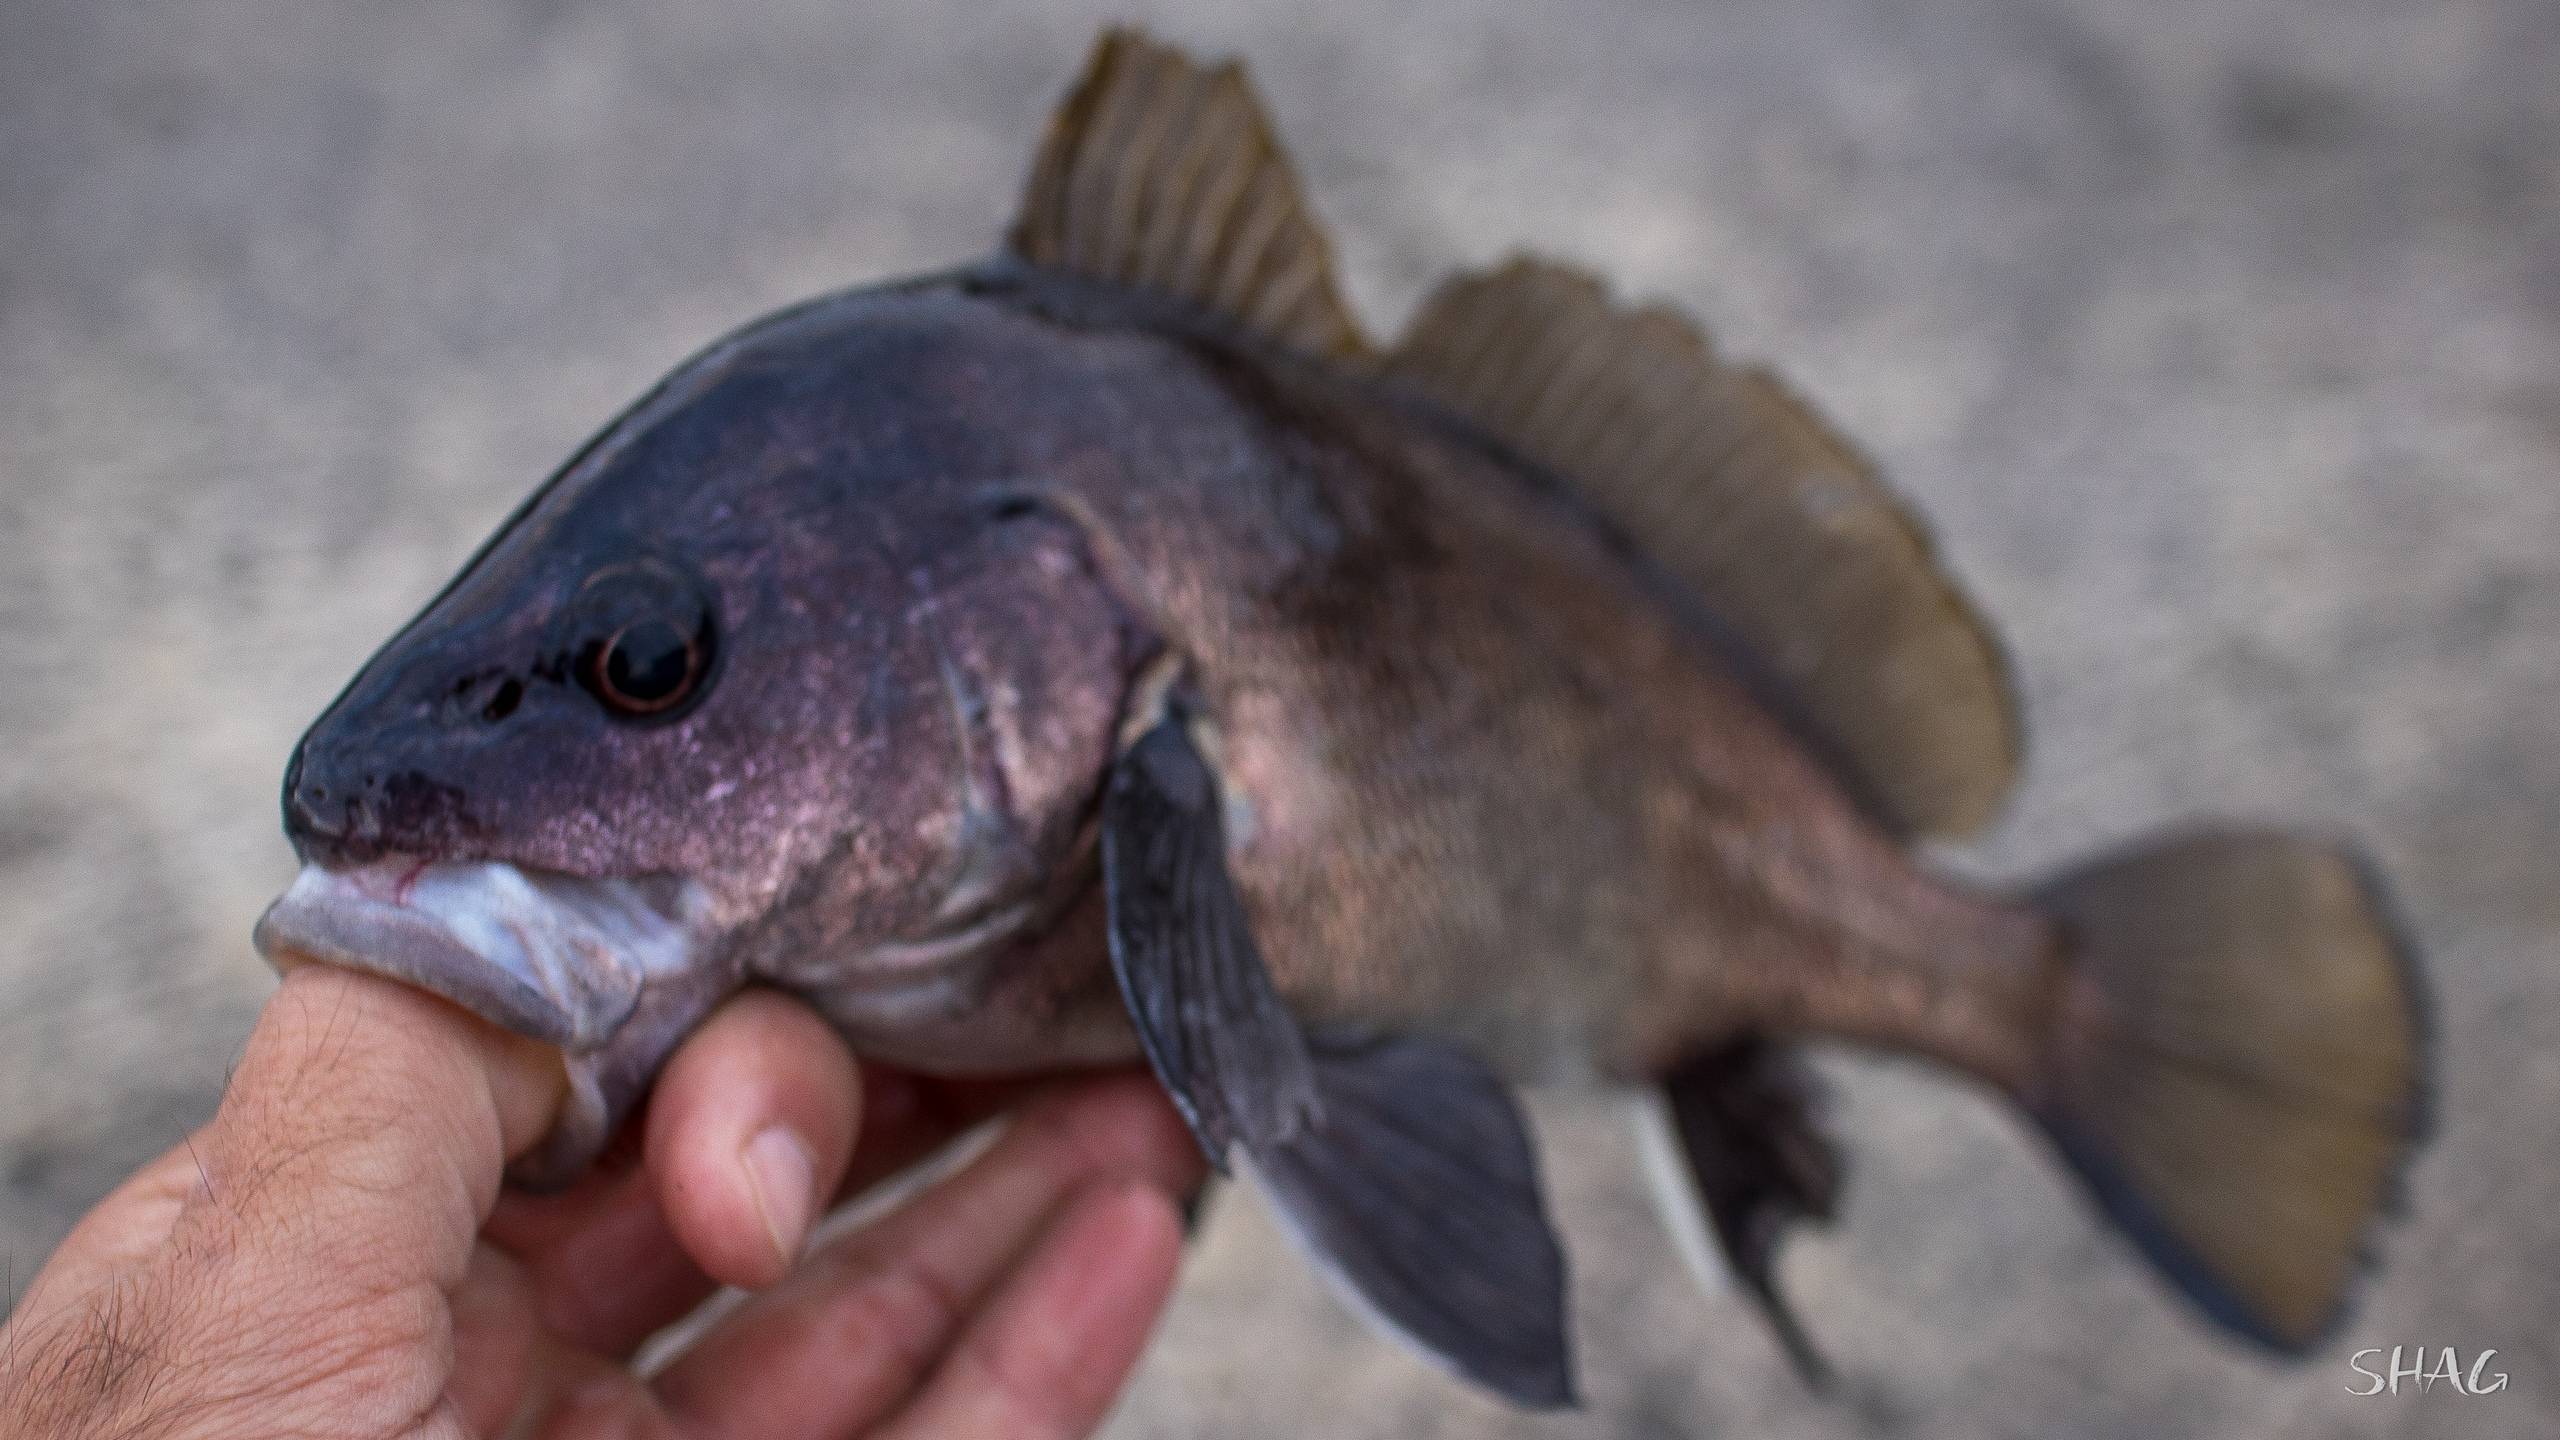 Зубатка полосатая фото и описание – каталог рыб, смотреть онлайн